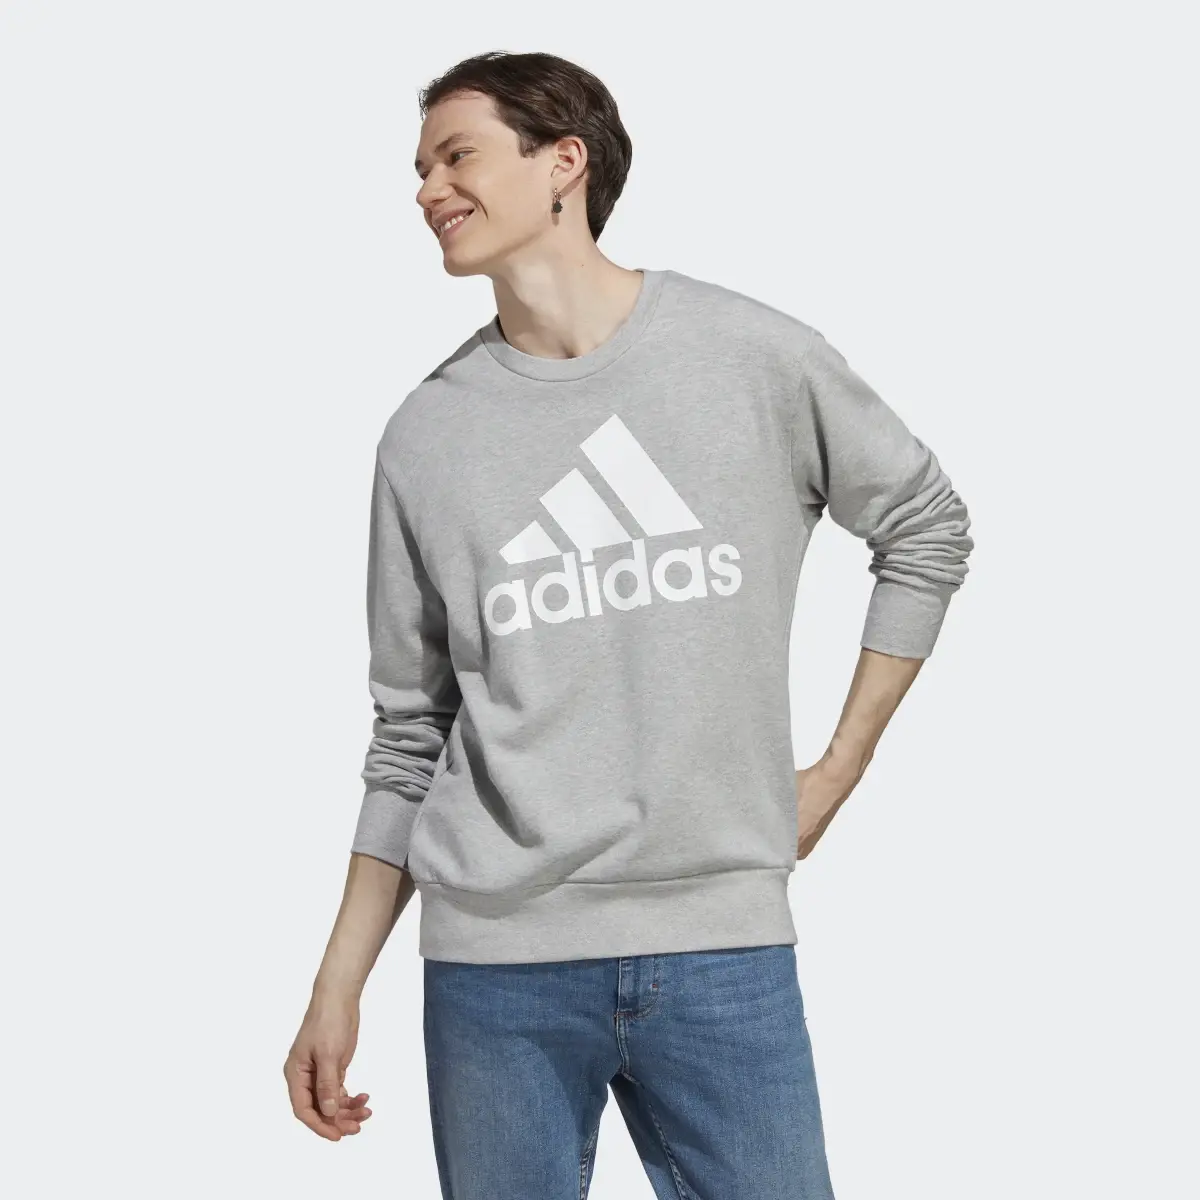 Adidas Essentials French Terry Big Logo Sweatshirt. 2